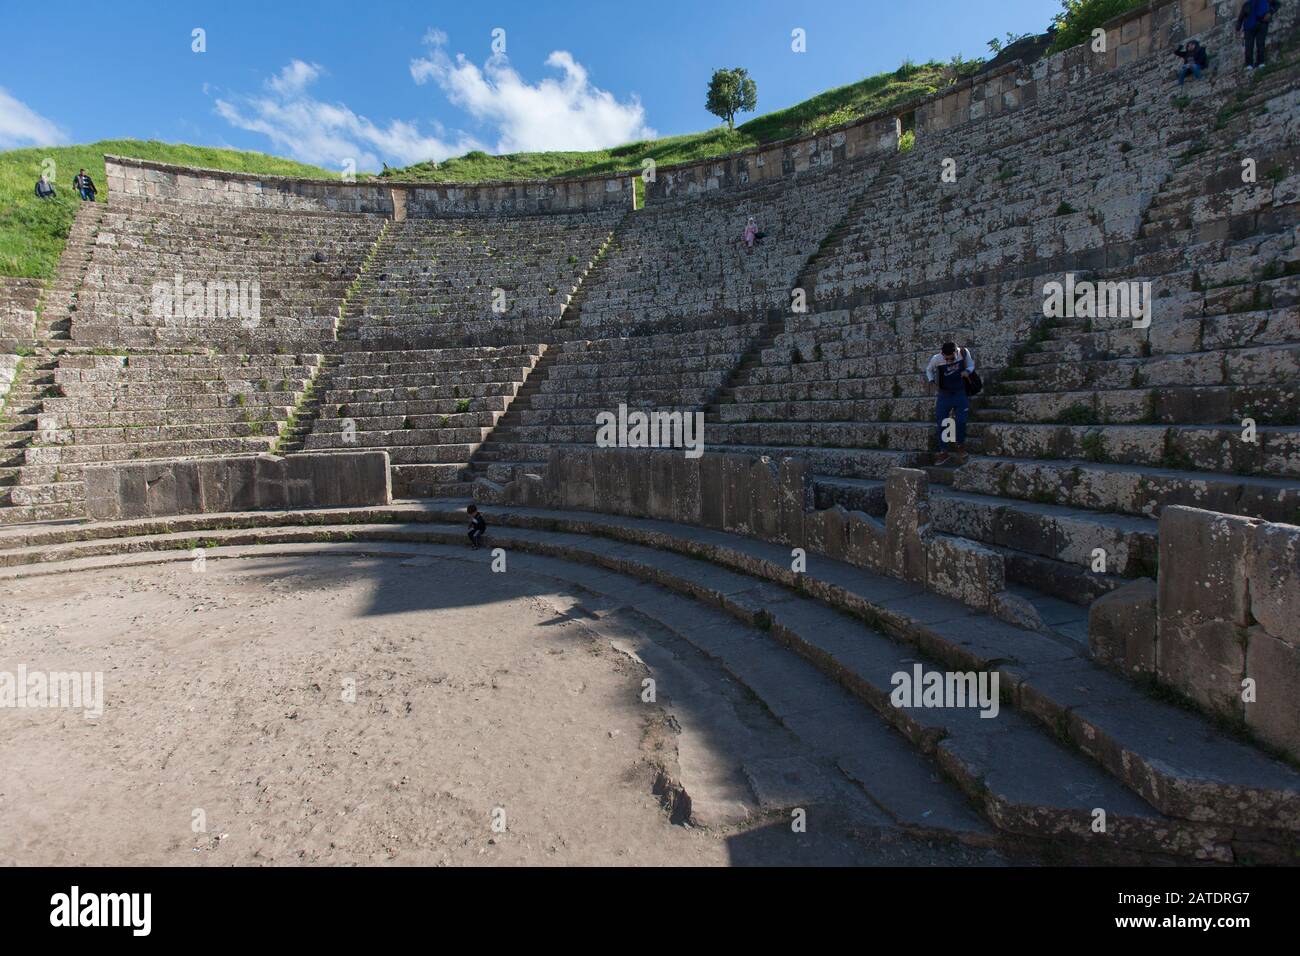 L'amphithéâtre des ruines romaines anciennes de Djemilla, site classé au patrimoine mondial de l'UNESCO dans le nord de l'Algérie. Près de Setif.. Banque D'Images